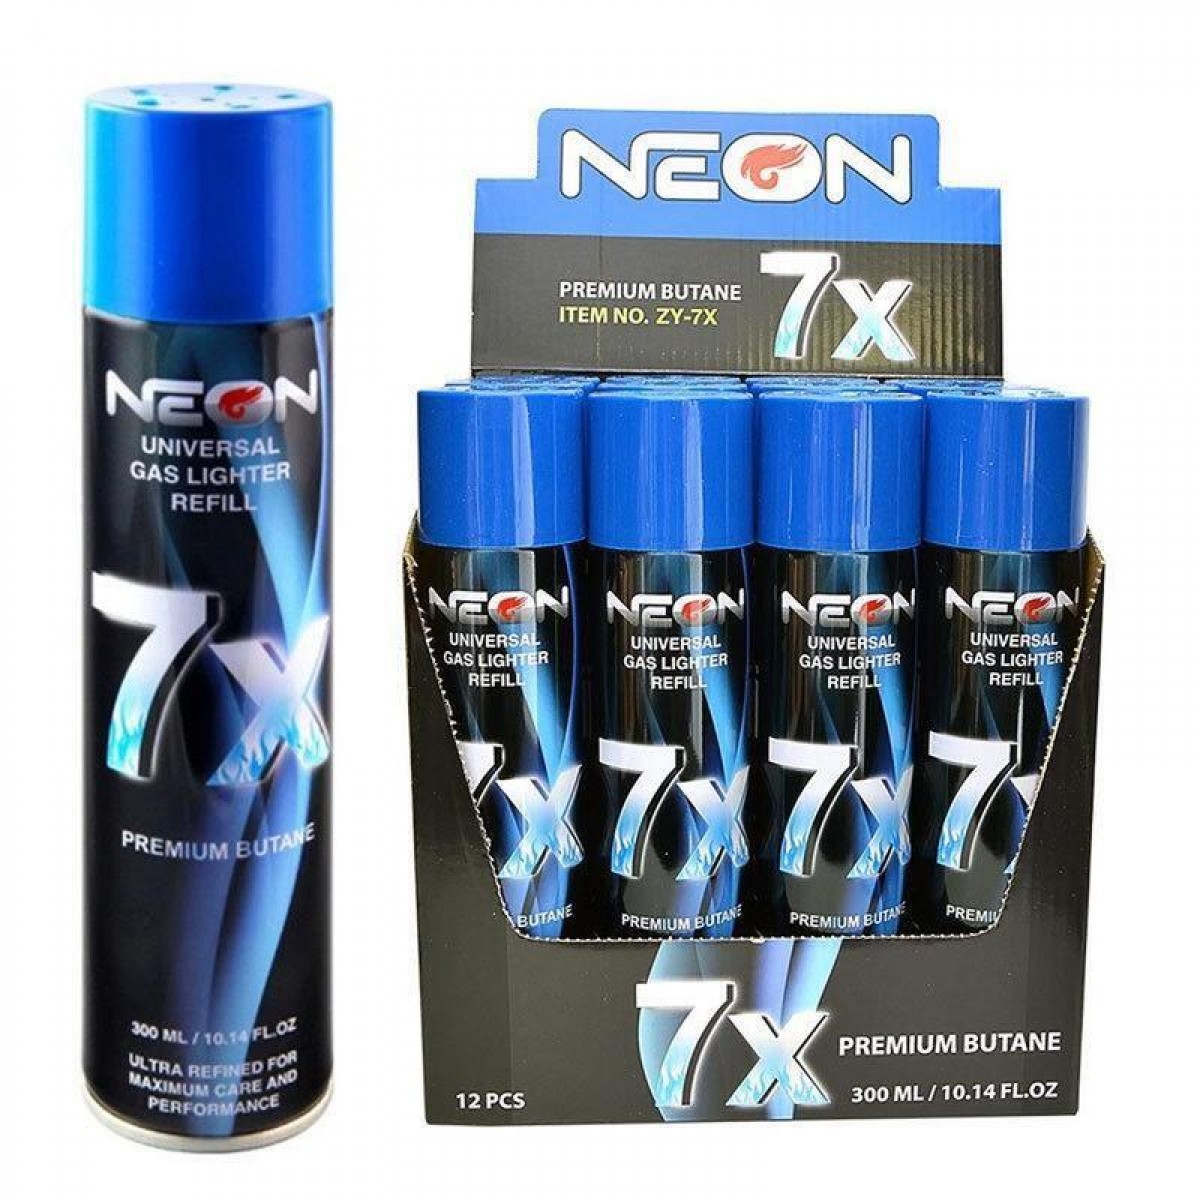 Neon 7x Refined Butane 12CT Case